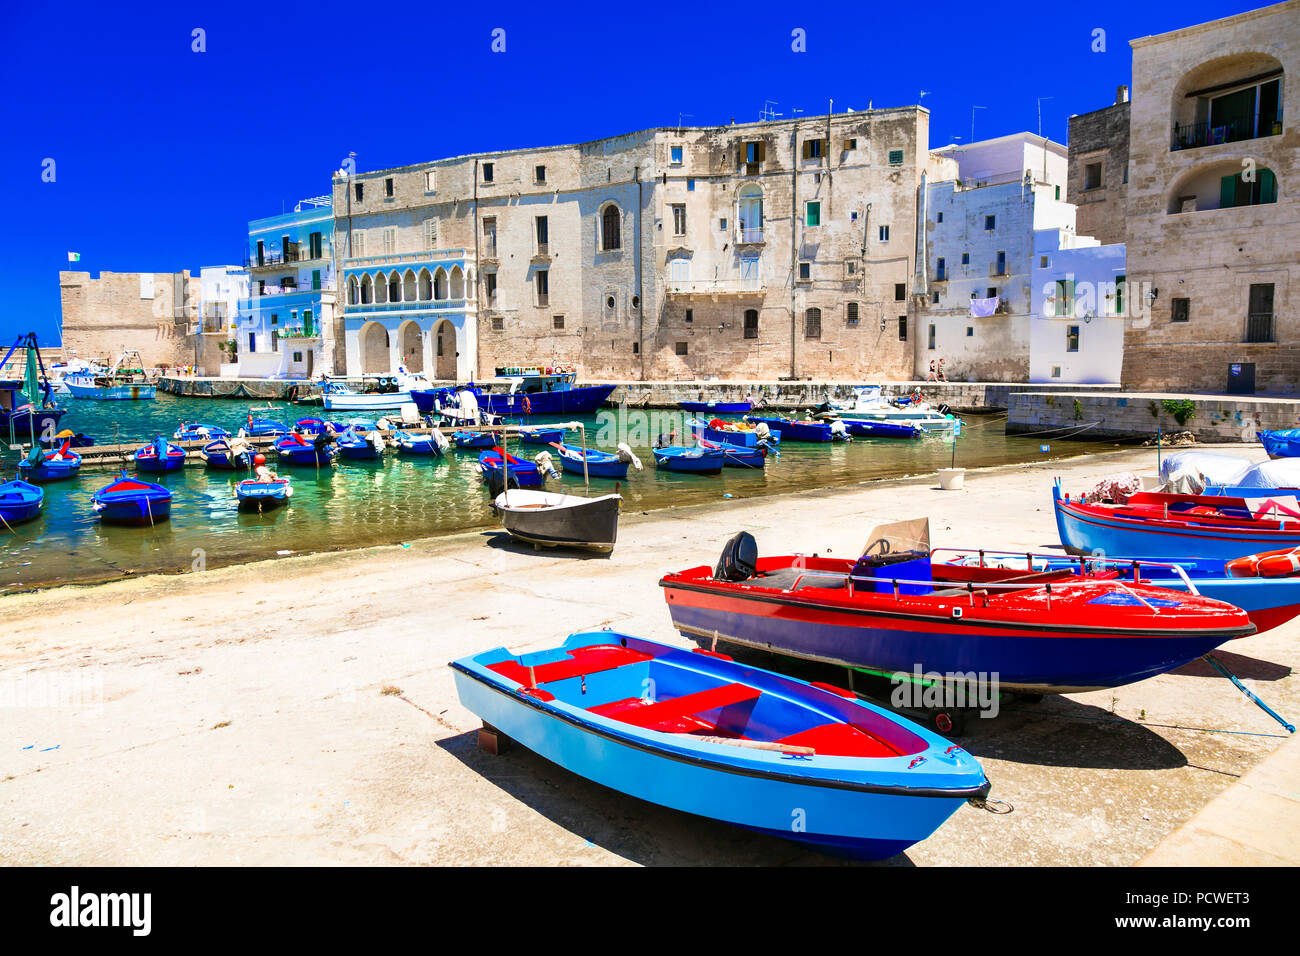 Bellissima città di Monopoli,vista con tradizionali barche da pesca e case,Puglia,l'Italia. Foto Stock